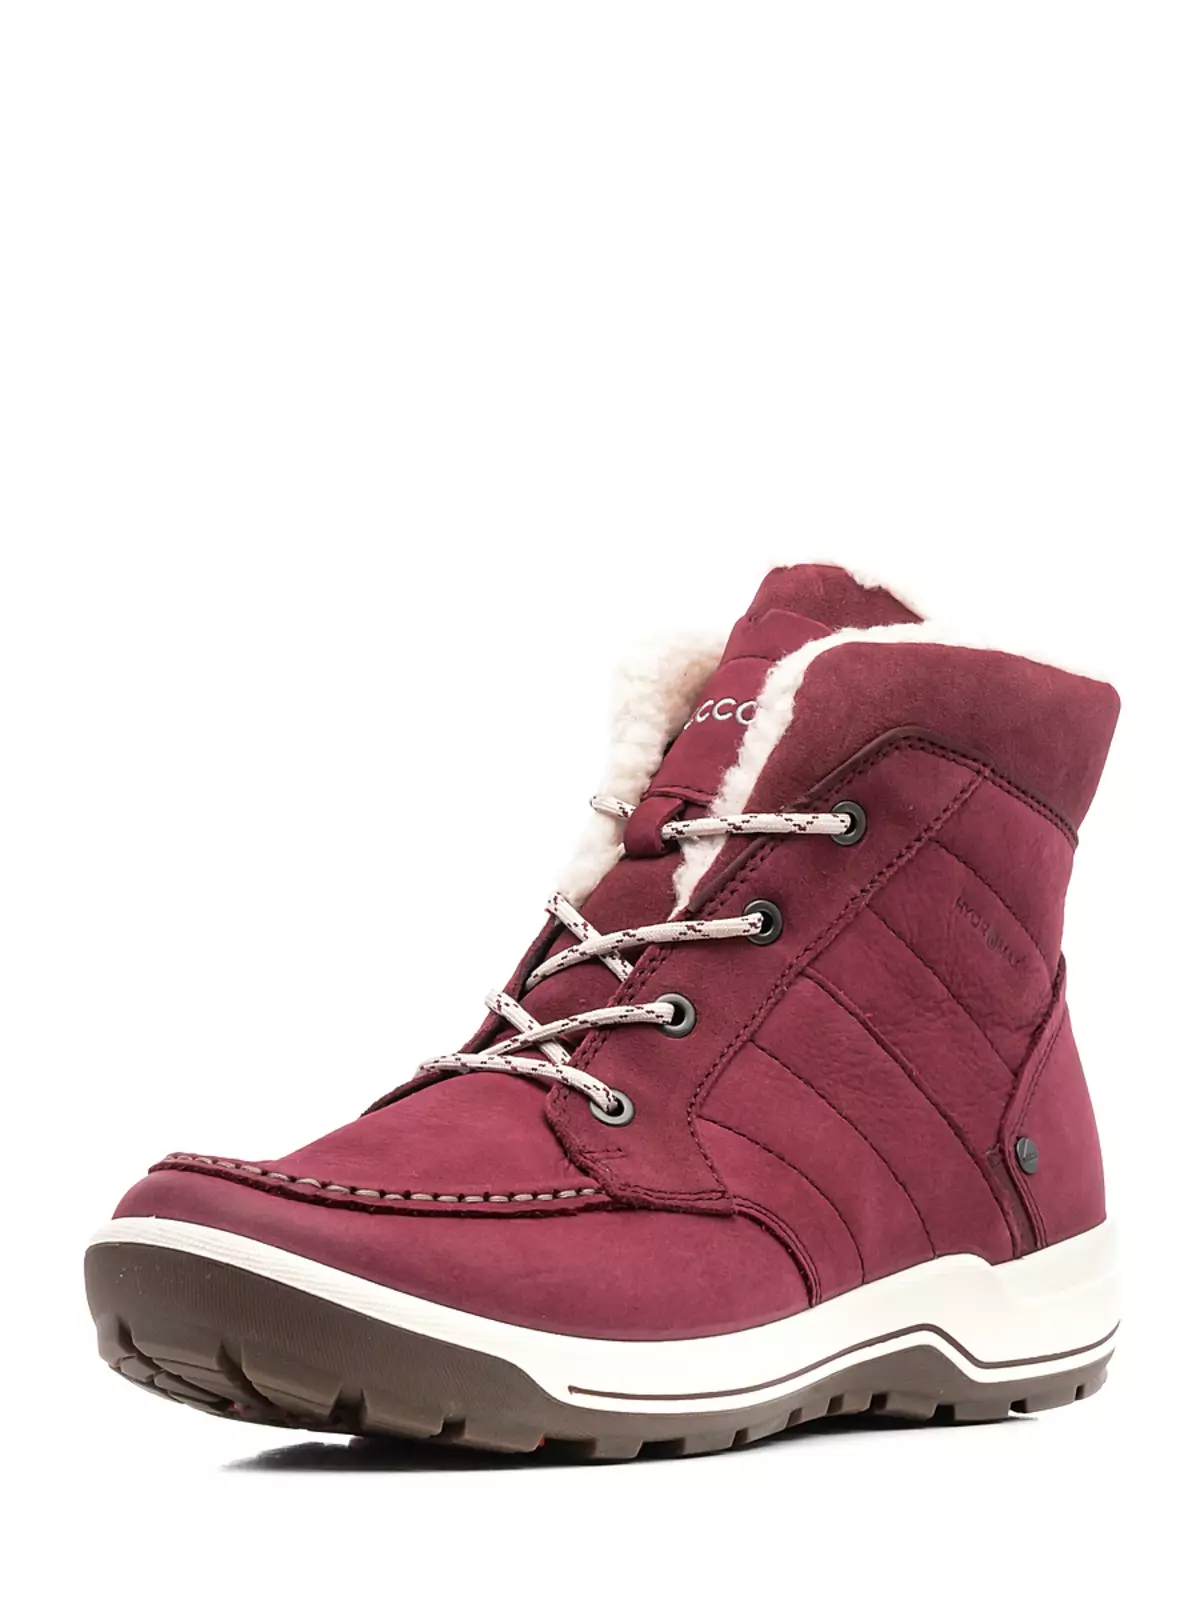 Boots sneakers (76 wêne): pêlavên zivistanê yên zivistanê yên jinê 1851_23